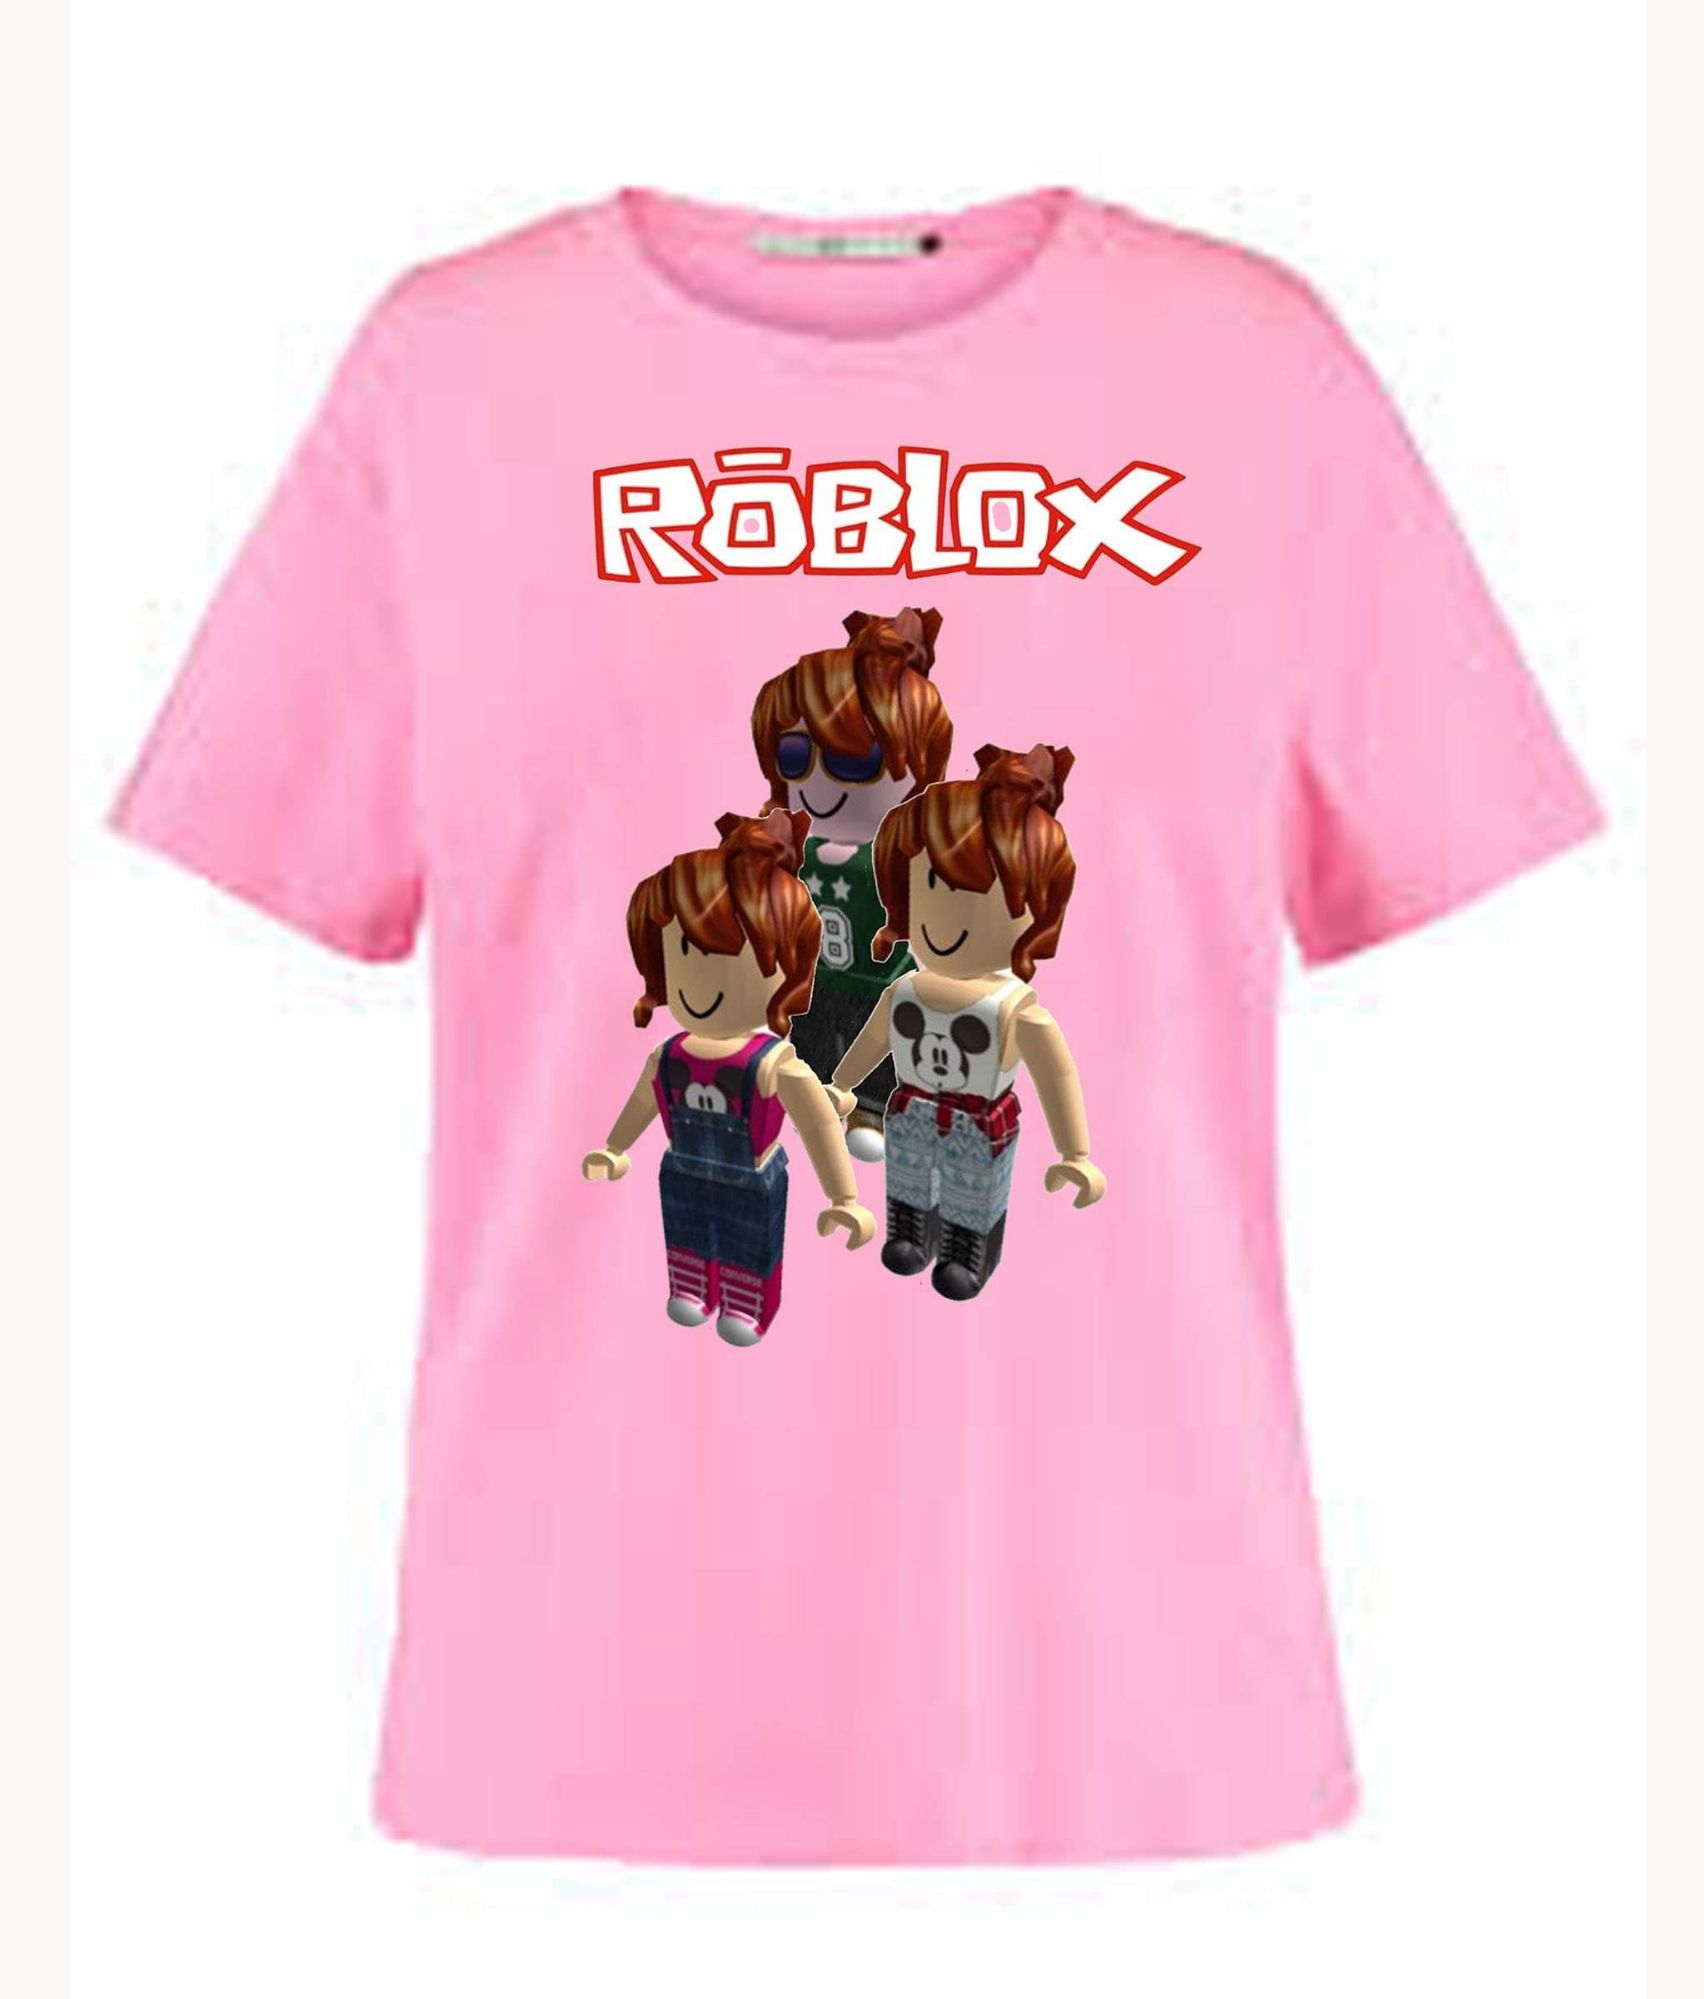 Cute t shirt - Roblox